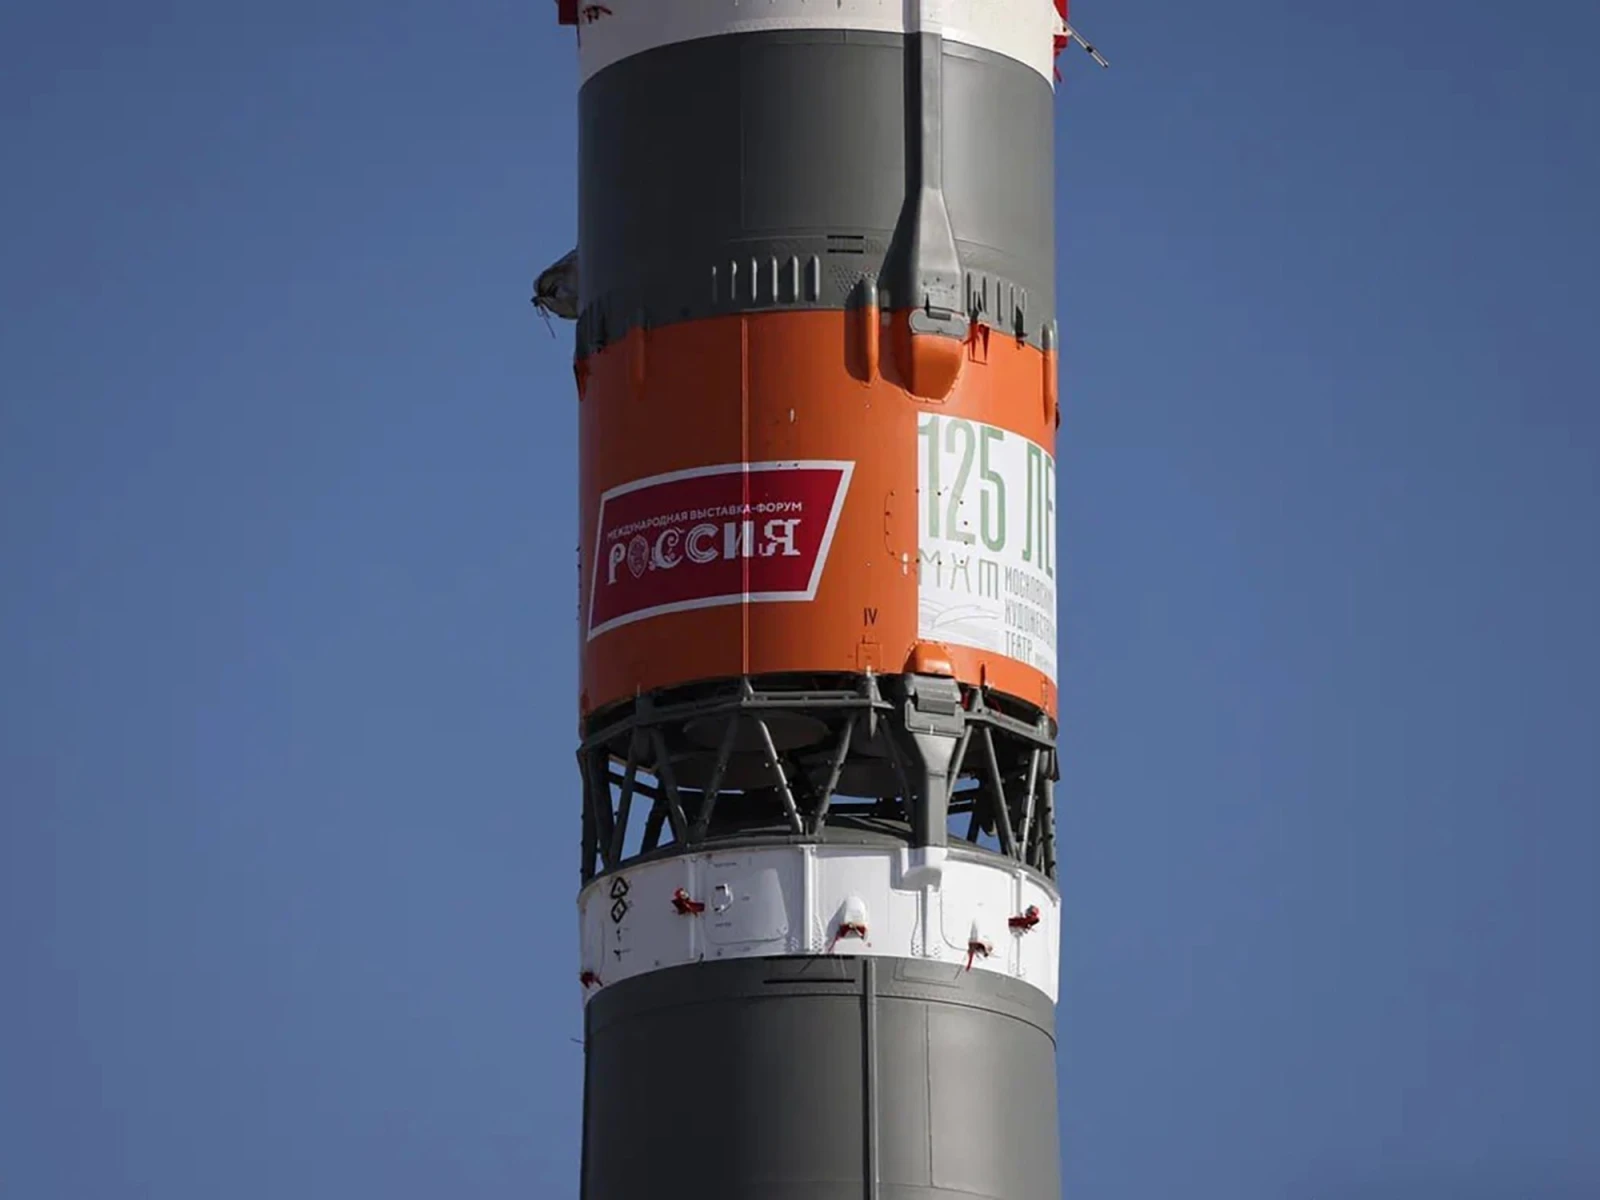 Ракета с логотипом Международной выставки-форума "Россия" доставит космонавтов на МКС